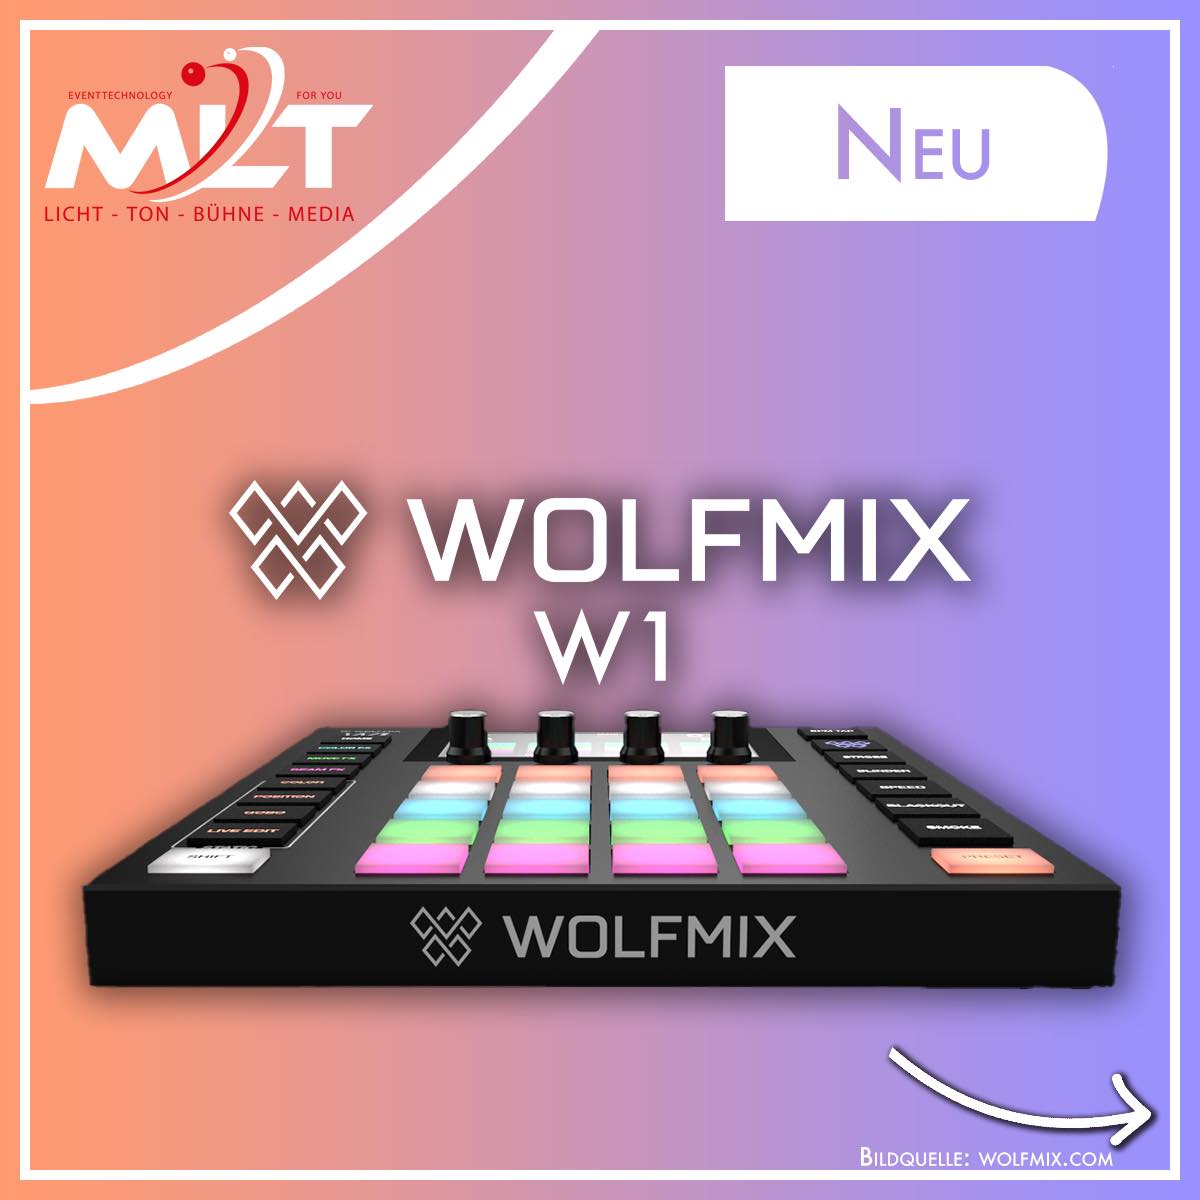 Wolfmix W1 Lichtsteuerung bei MLT